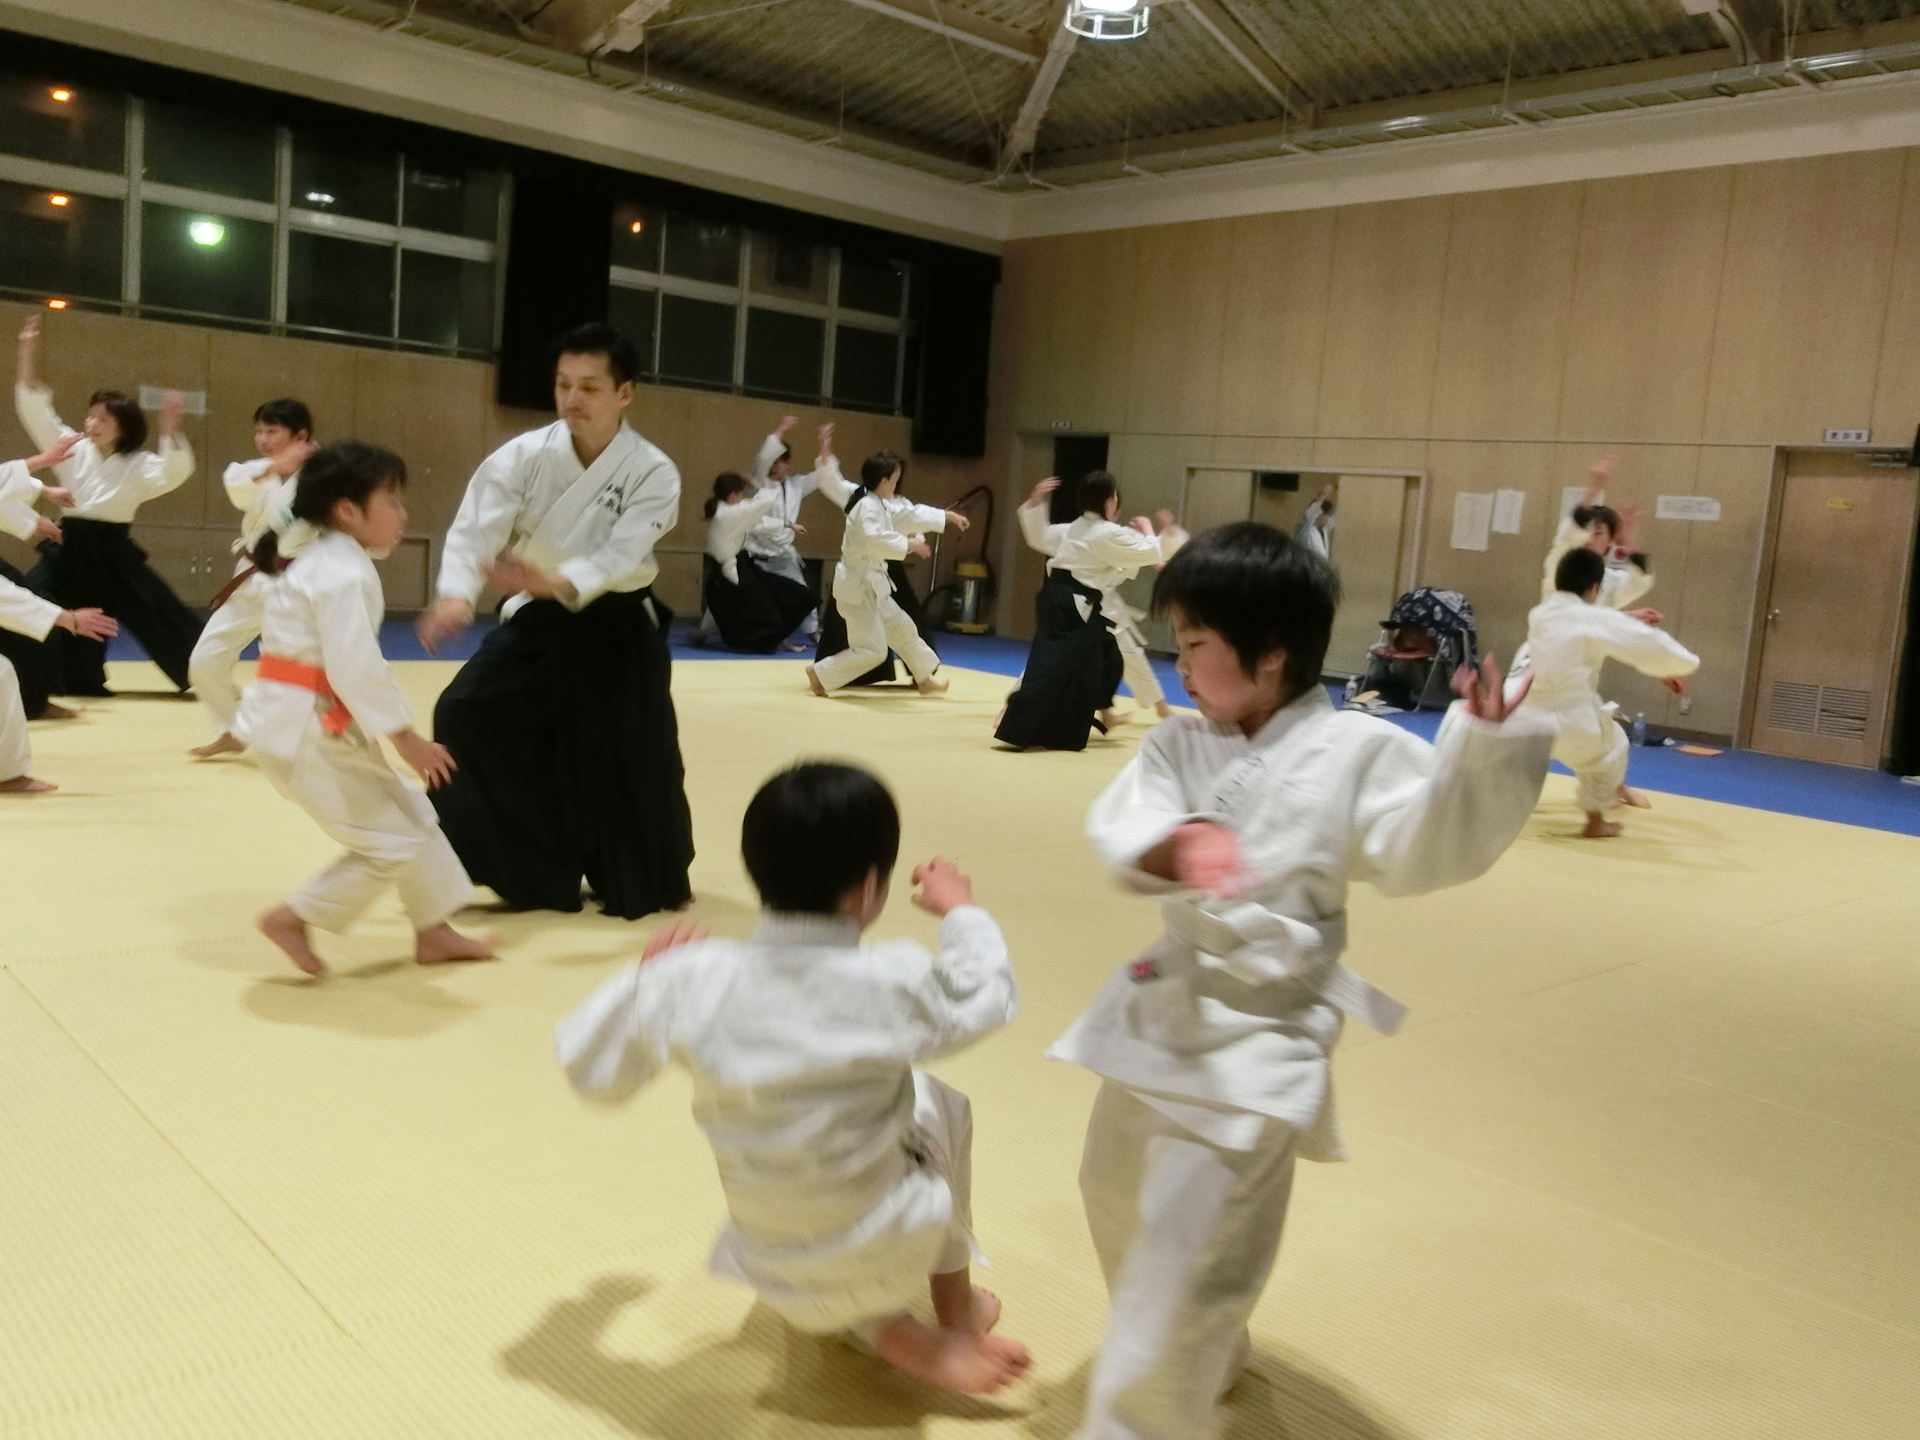 5 大阪 春風会合気道aikidoは大阪市住吉区の三稜中学挌技室で稽古しています